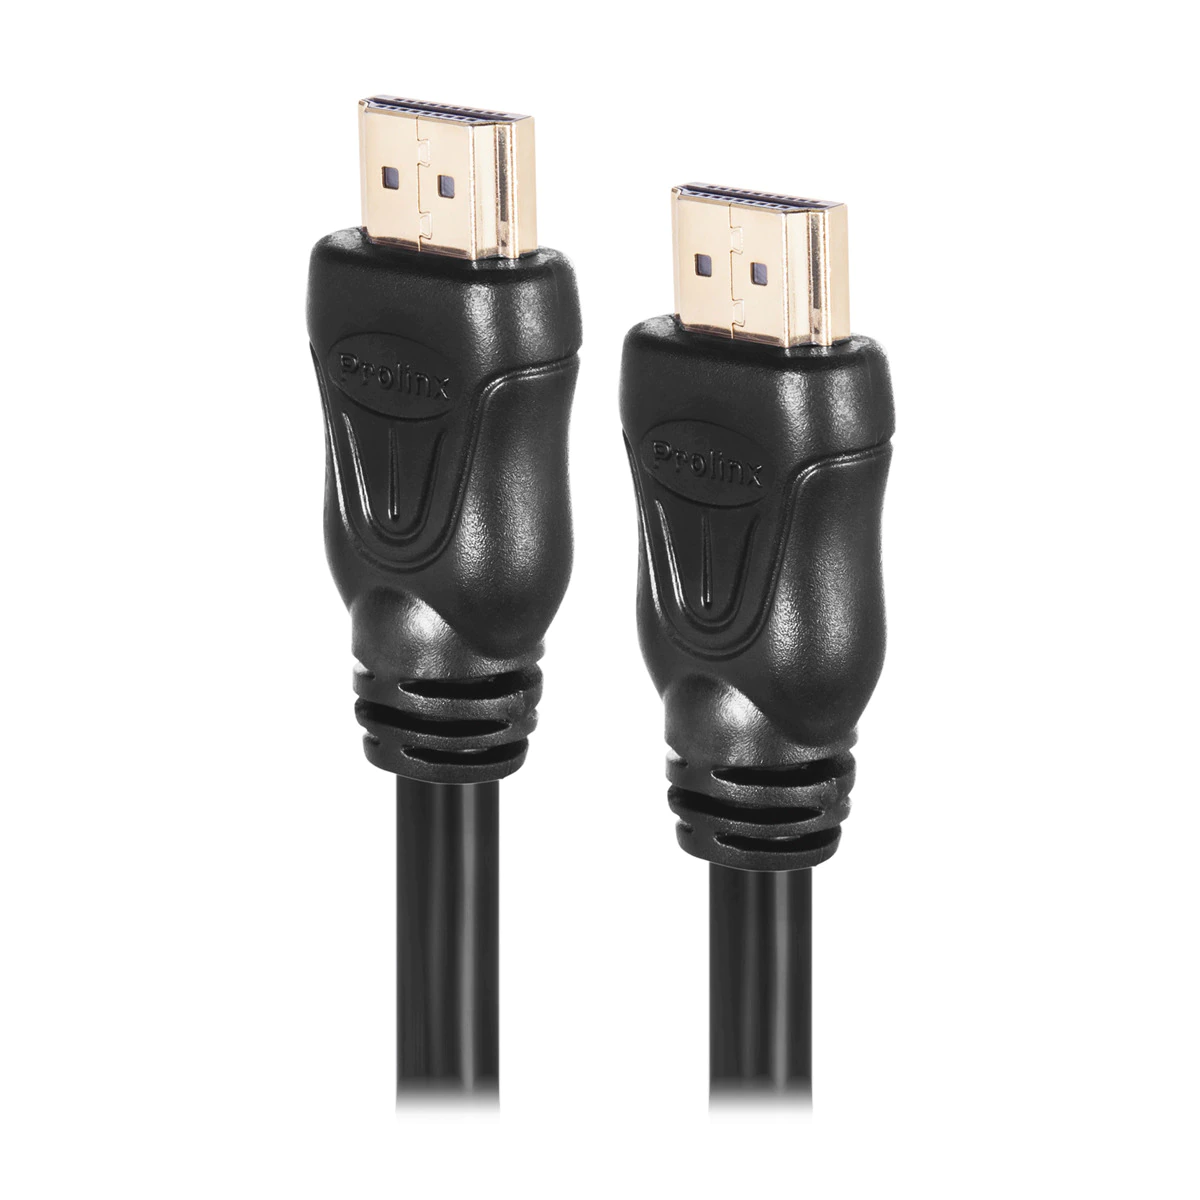 Cable Prolinx PL-2 HDMI 2.0 (A) a HDMI 2.0 (A) de 1,5 metros